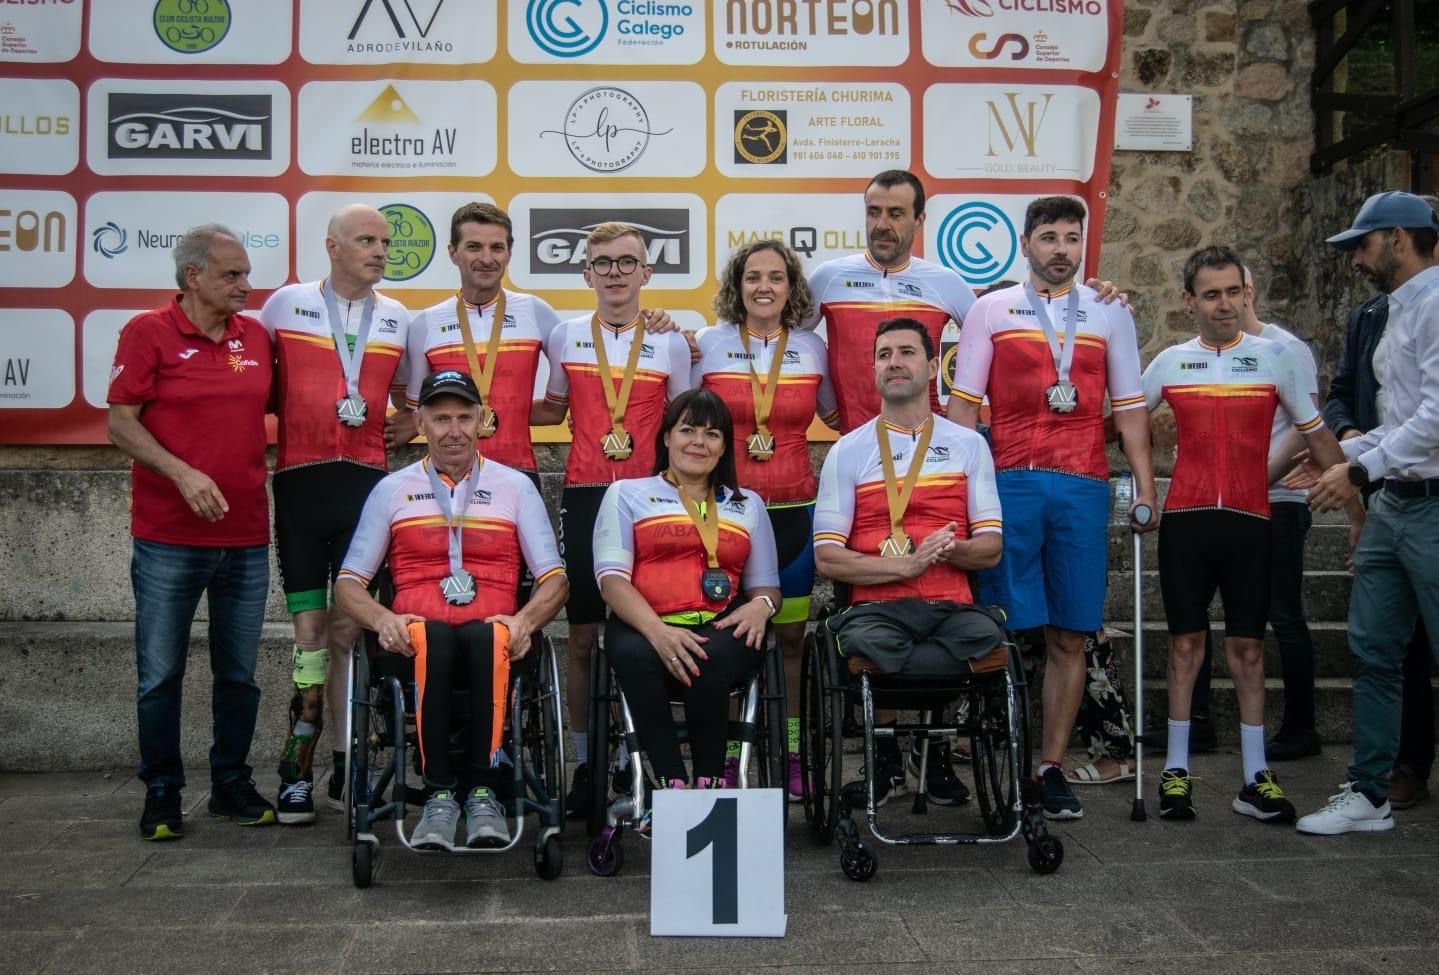 El Gran Premio Adro de Vilaño puso fin a la Copa de España de Ciclismo Paralímpico